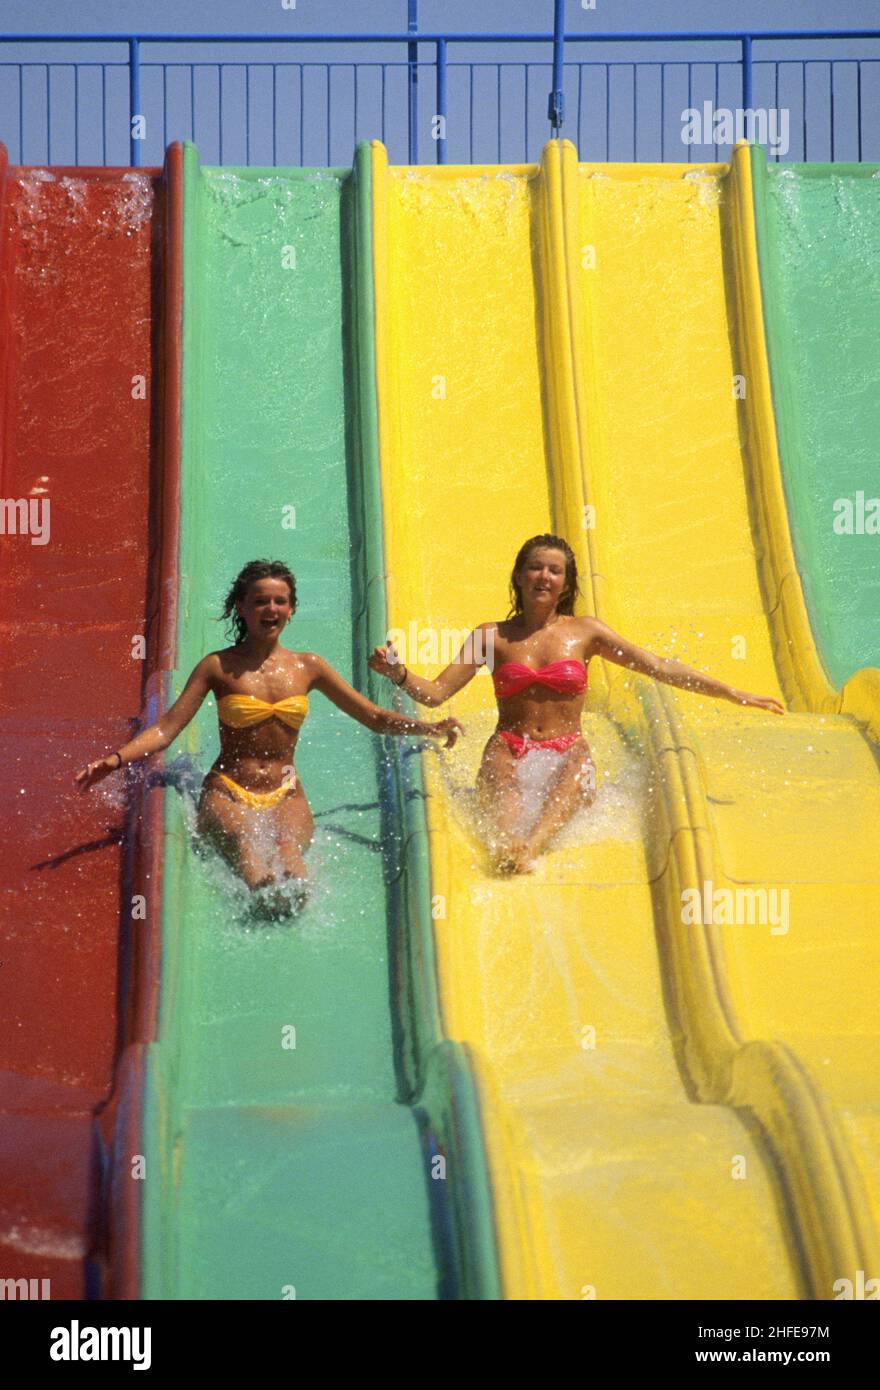 2 giovani donne scivolano su toboggan colorato allegro vacanze aspetto divertente Foto Stock